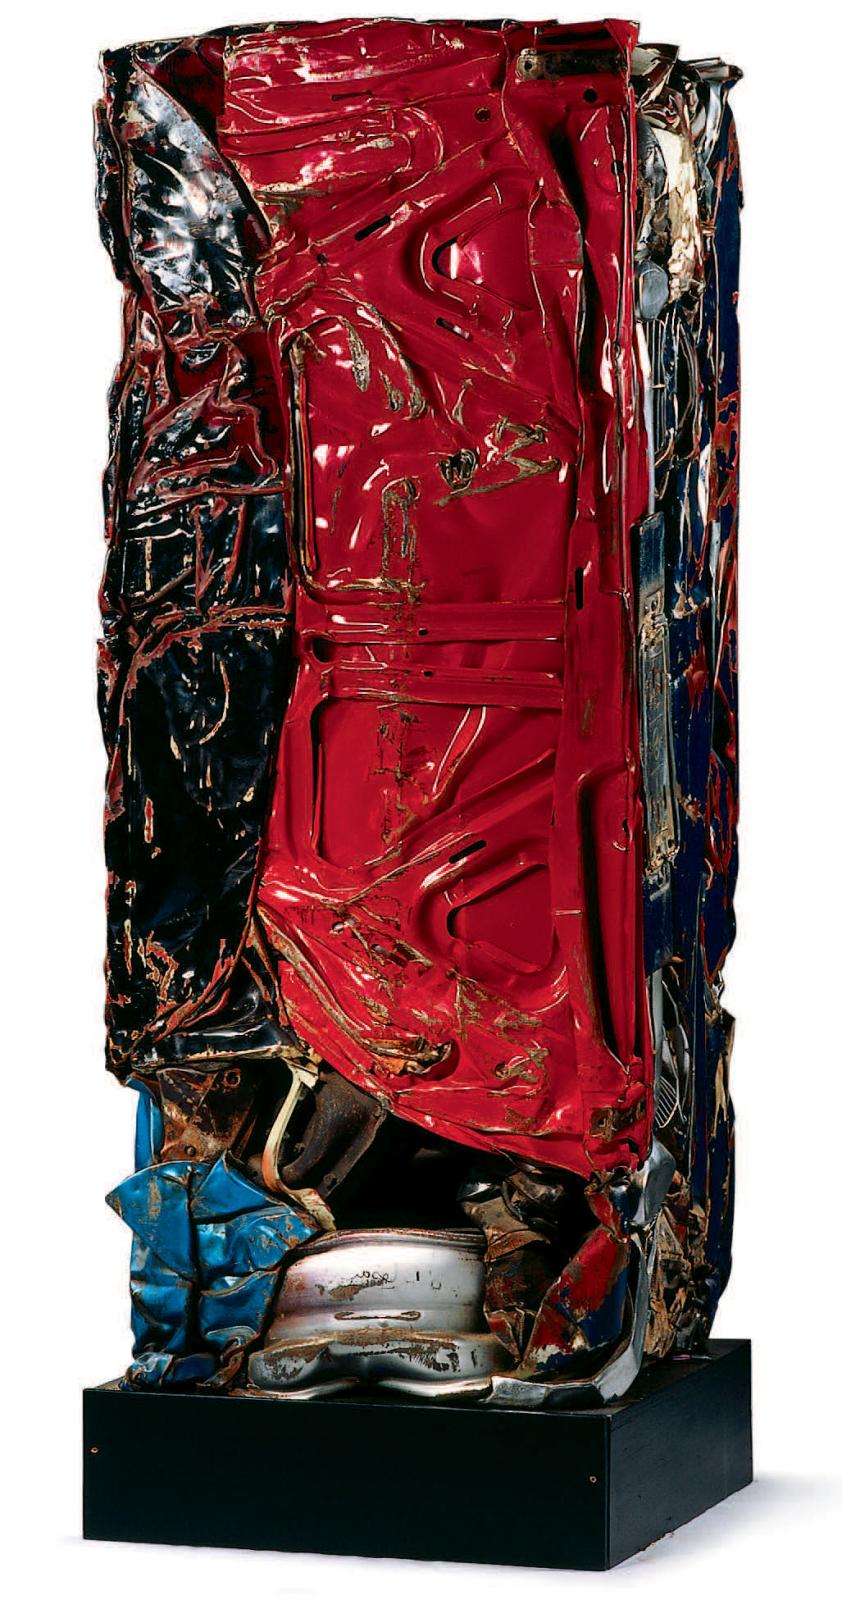 César (1921-1998), Compression, 1978, 166 x 65 x 65 cm.Collection de la fondation Veranneman.Paris, 8 octobre 2005, Cornette de Saint Cyr SVV. M. Vach